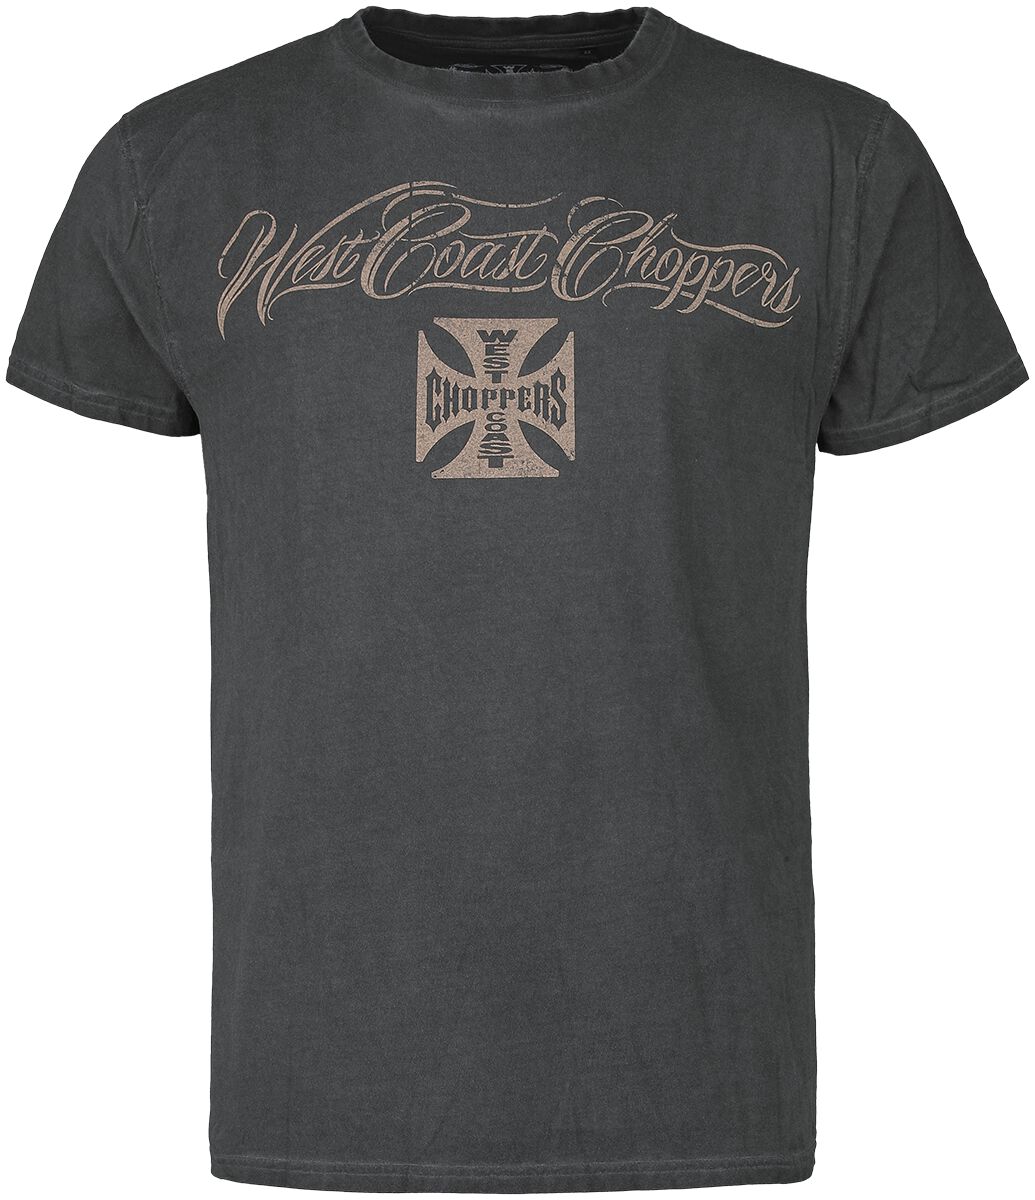 West Coast Choppers T-Shirt - Eagle Crest - S bis 4XL - für Männer - Größe L - anthrazit